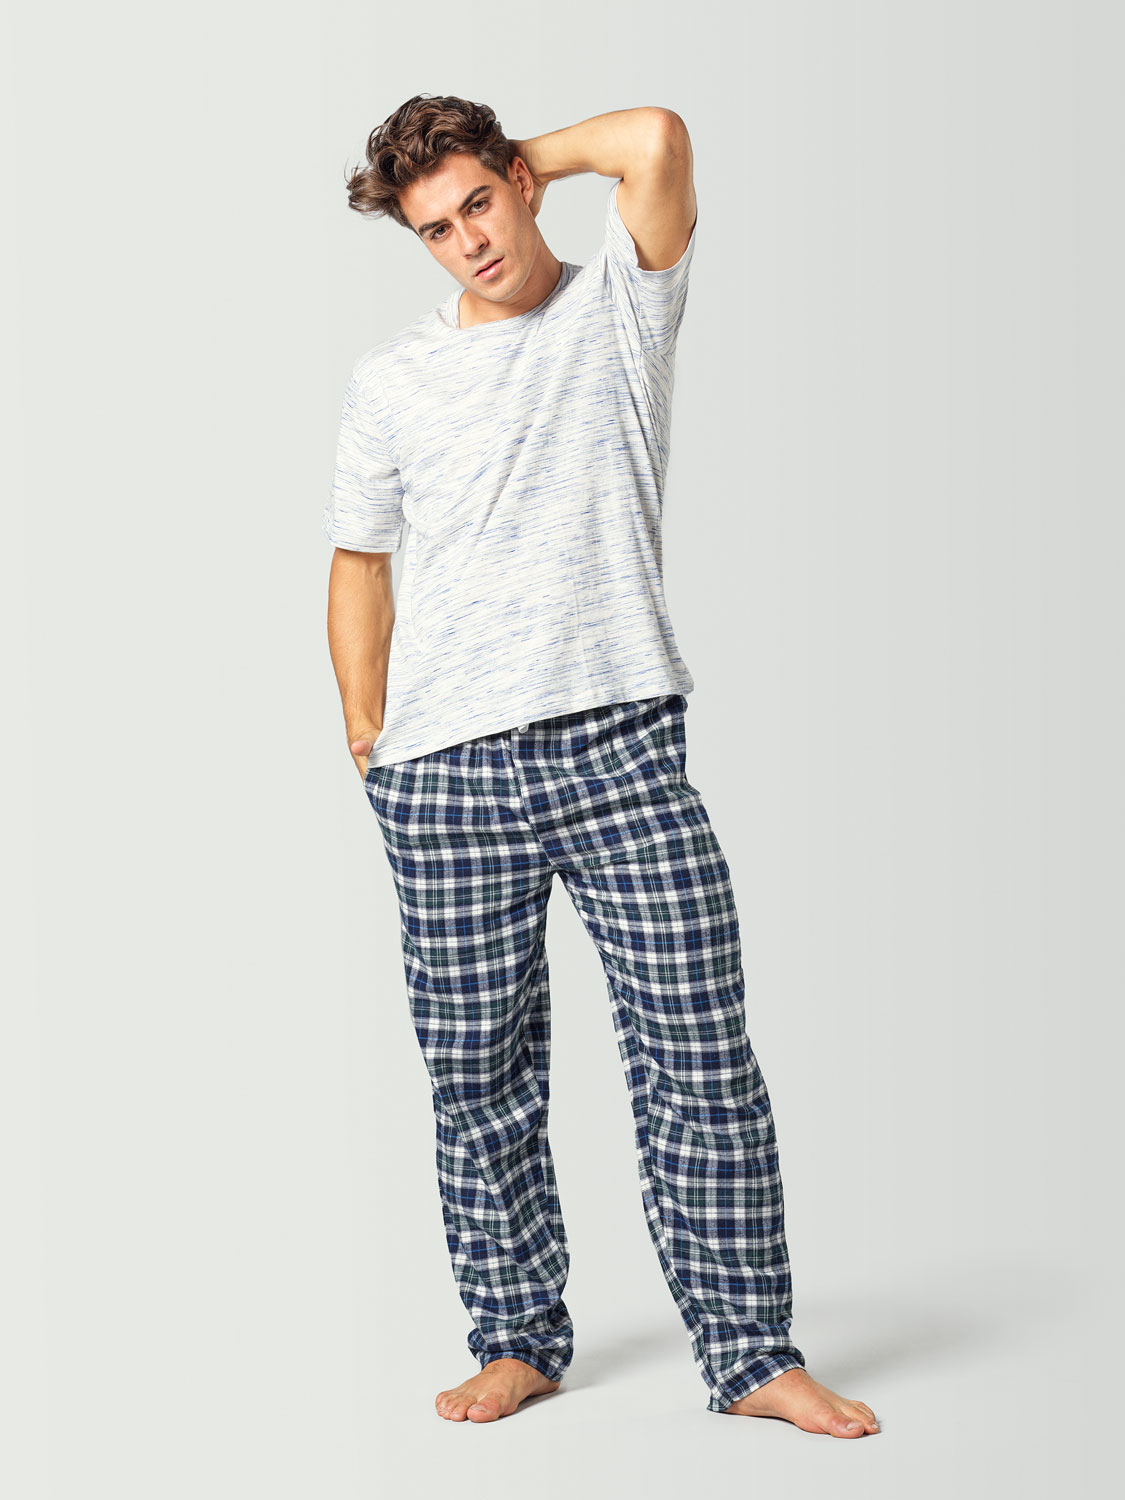 pijama para hombre con camiseta de manga corta blanca y pantalon a cuadros azul y blanco